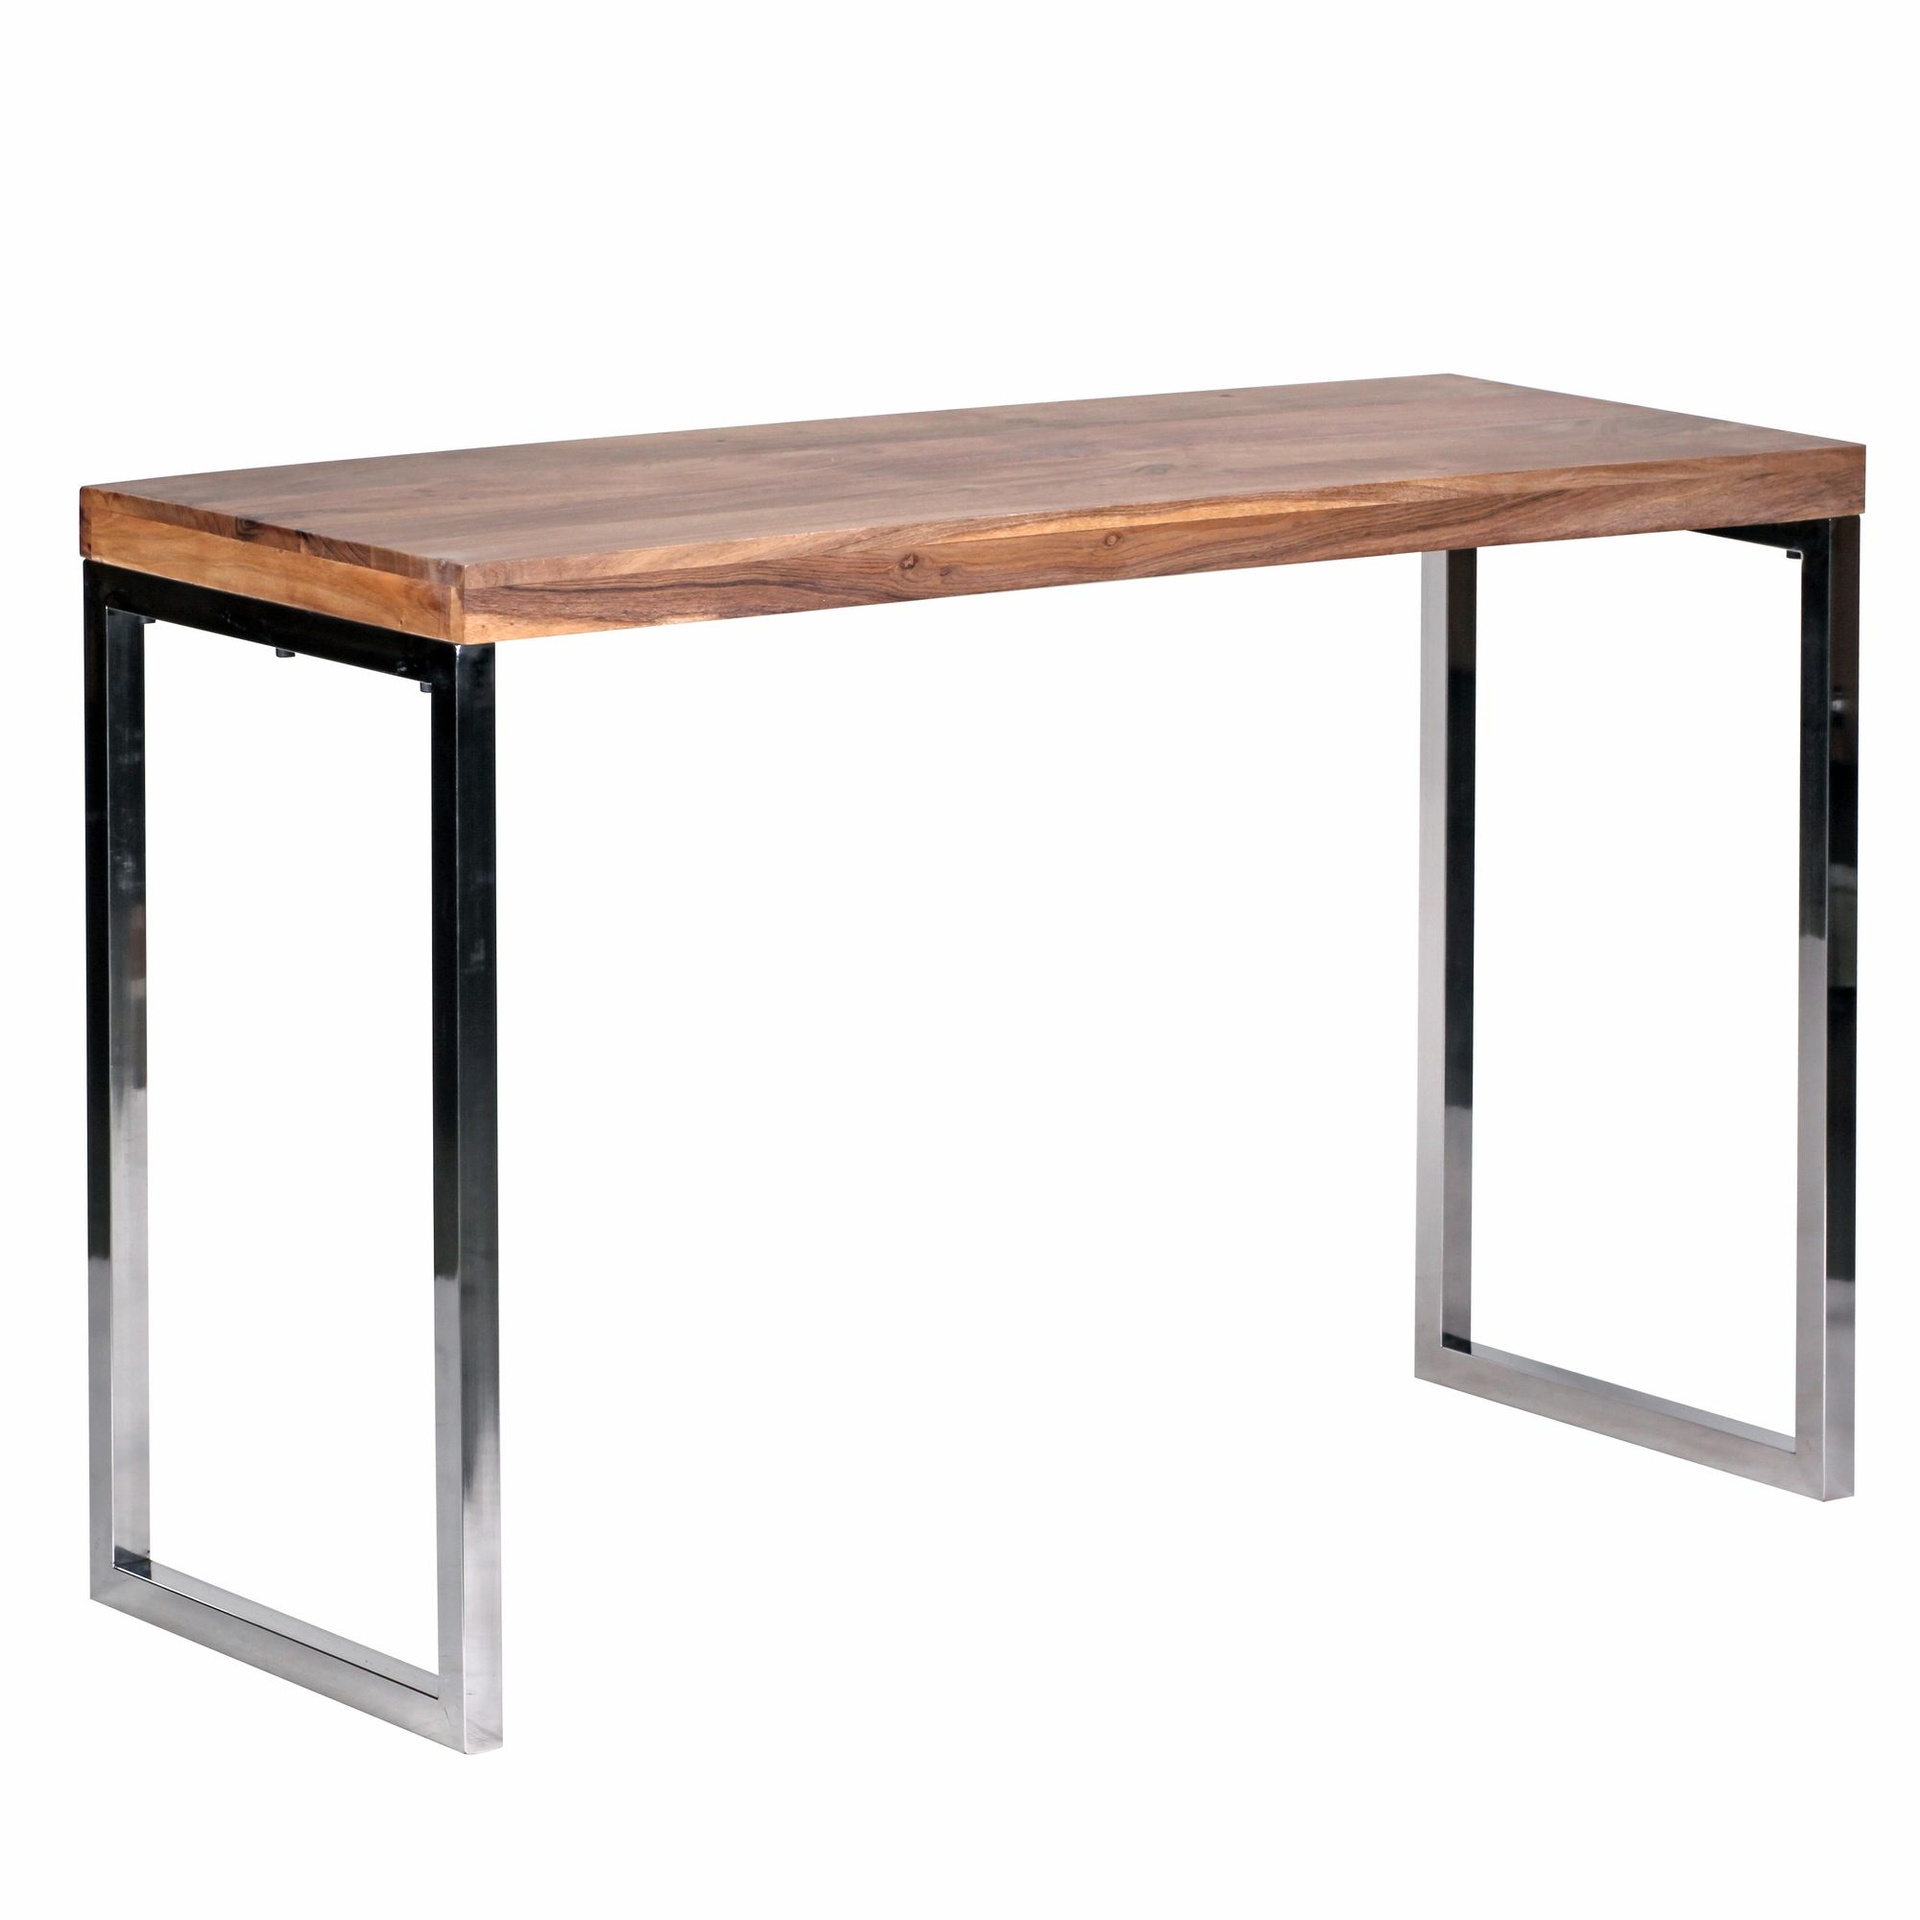 [A09625] Table console GUNA console en bois d'acacia massif avec pieds en métal 120 x 45 cm style maison de campagne